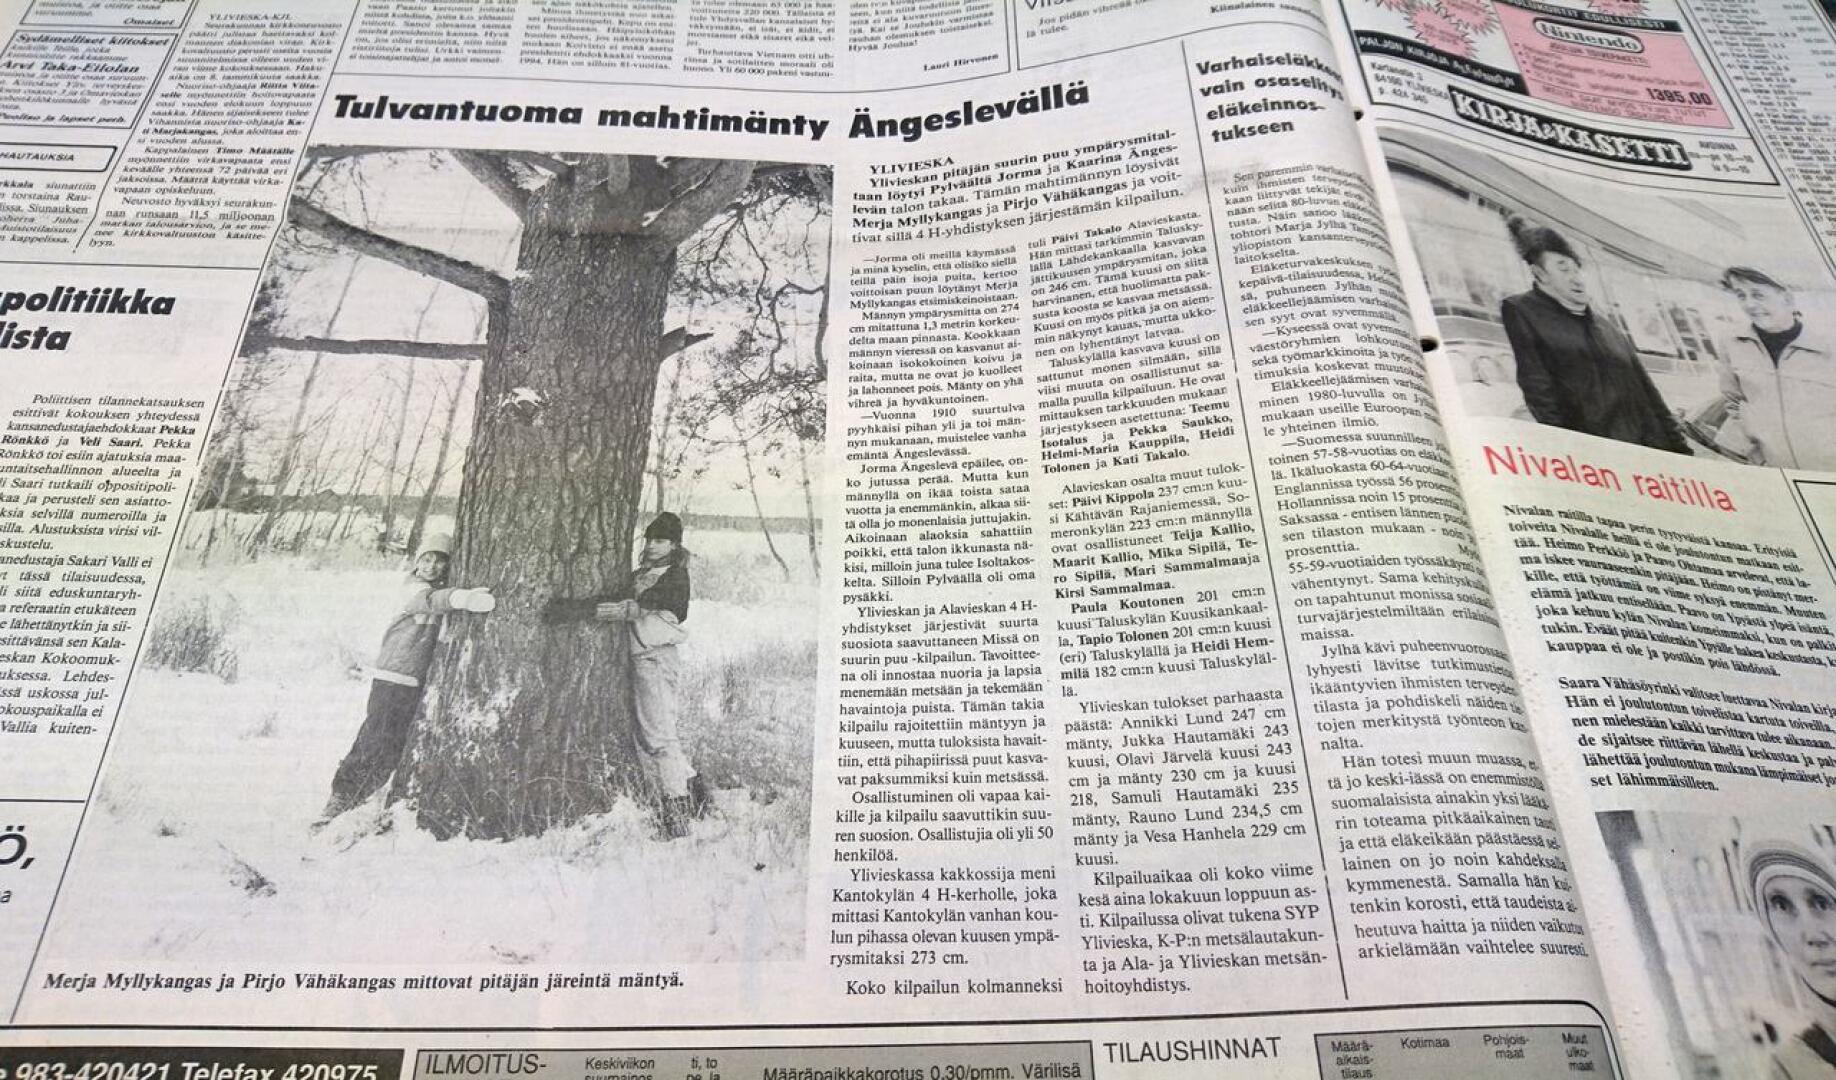 Pitäjän suurin puu löytyi Ängesperältä 30 vuotta sitten. Senttiä hoikemmaksi jäi Kantokylän koulun kuusi.